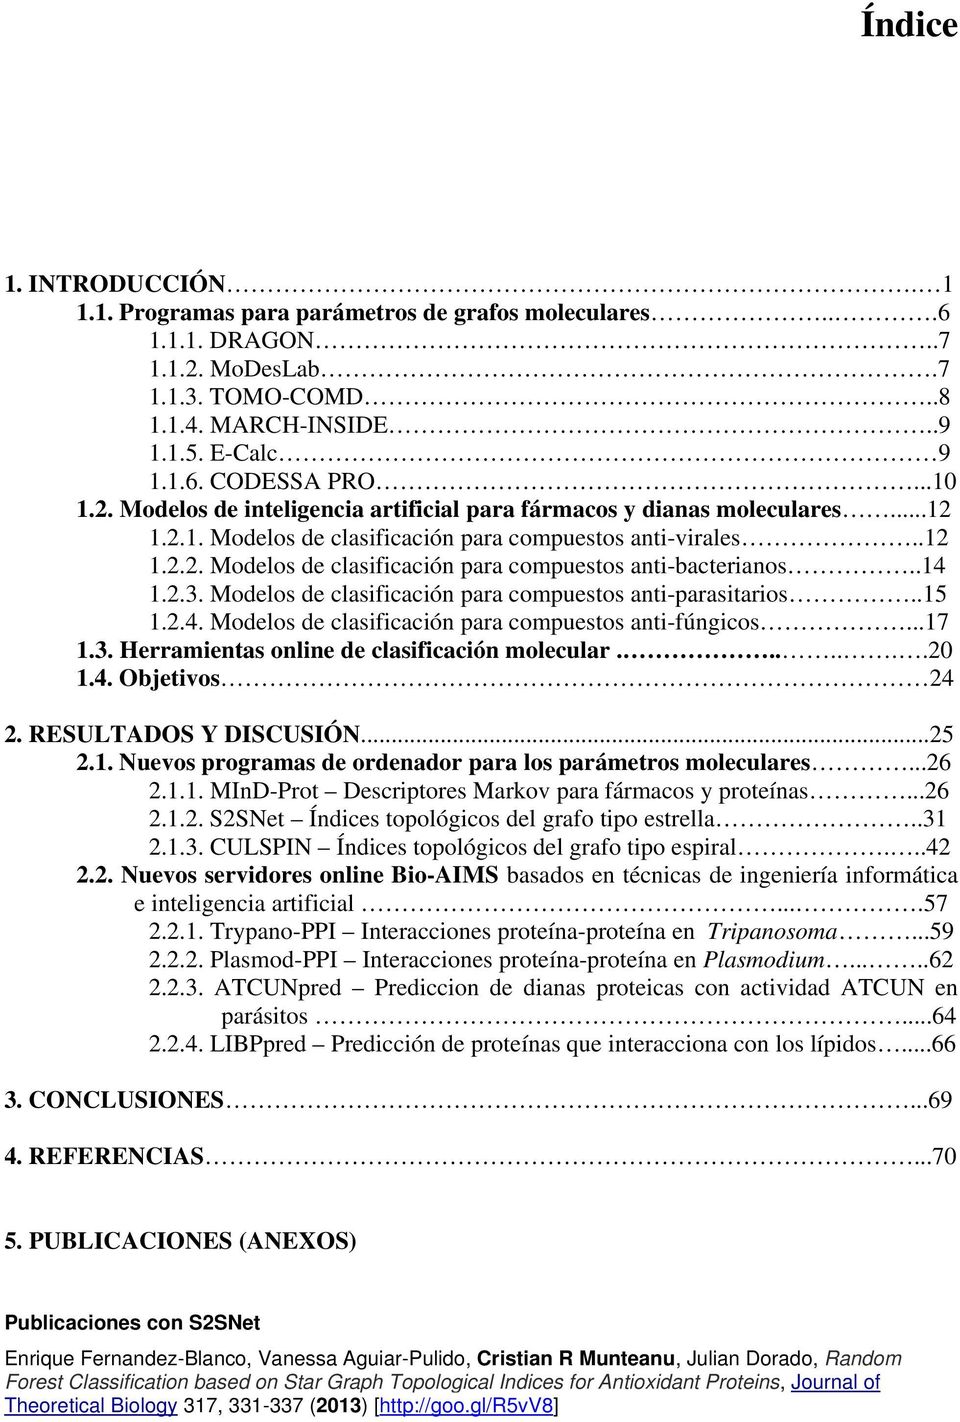 .14 1.2.3. Modelos de clasificación para compuestos anti-parasitarios..15 1.2.4. Modelos de clasificación para compuestos anti-fúngicos...17 1.3. Herramientas online de clasificación molecular.......20 1.